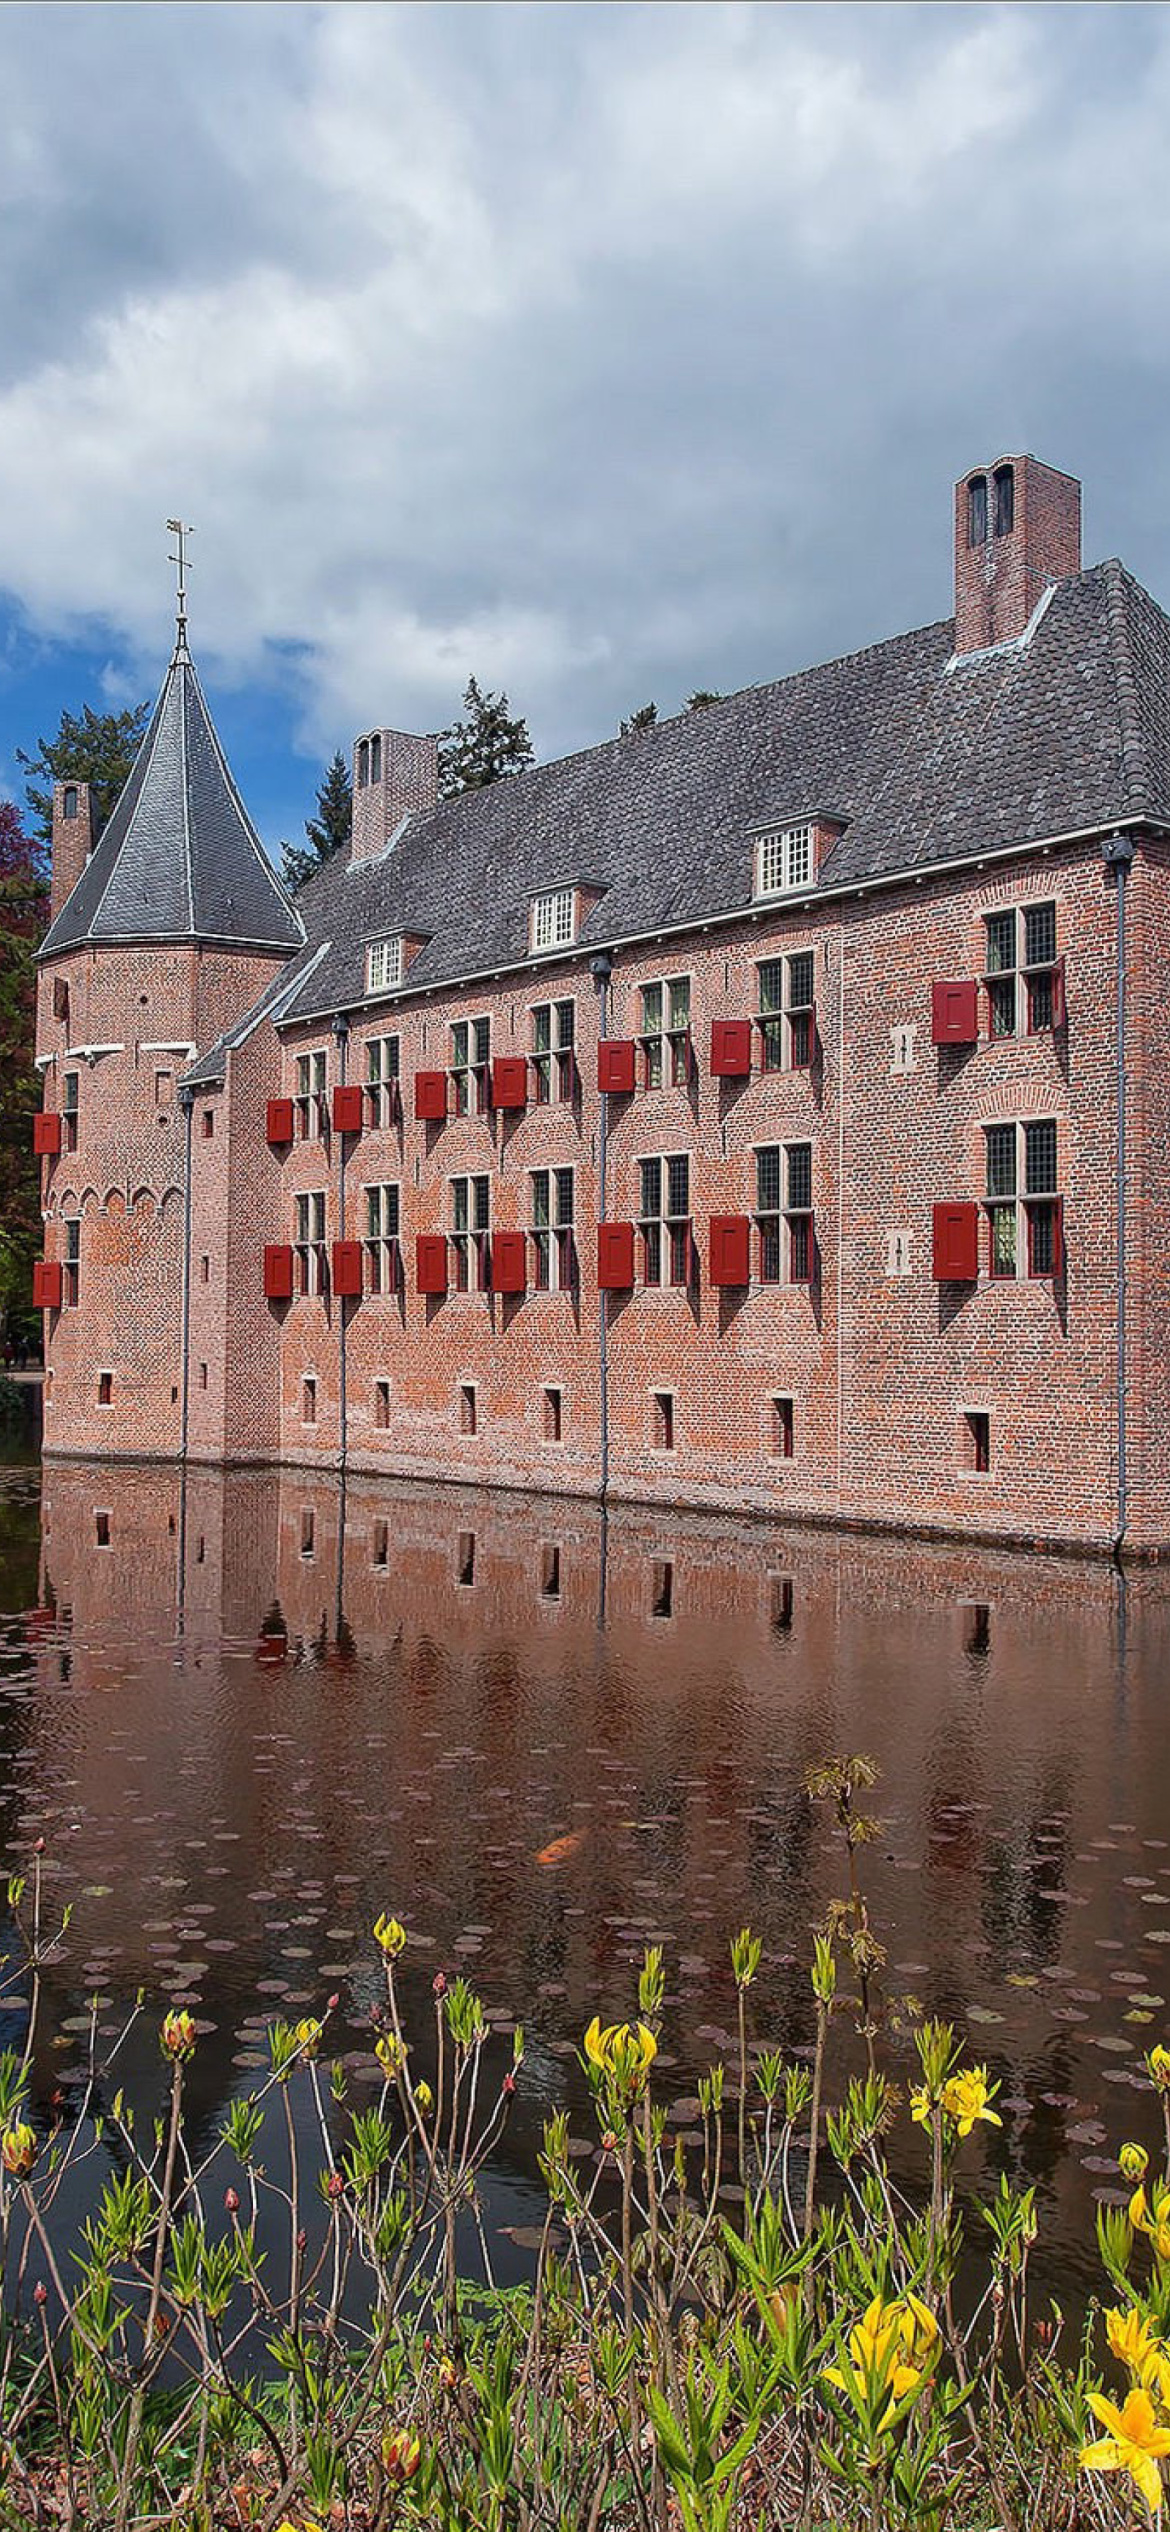 Das Oude Loo Castle in Apeldoorn in Netherlands Wallpaper 1170x2532